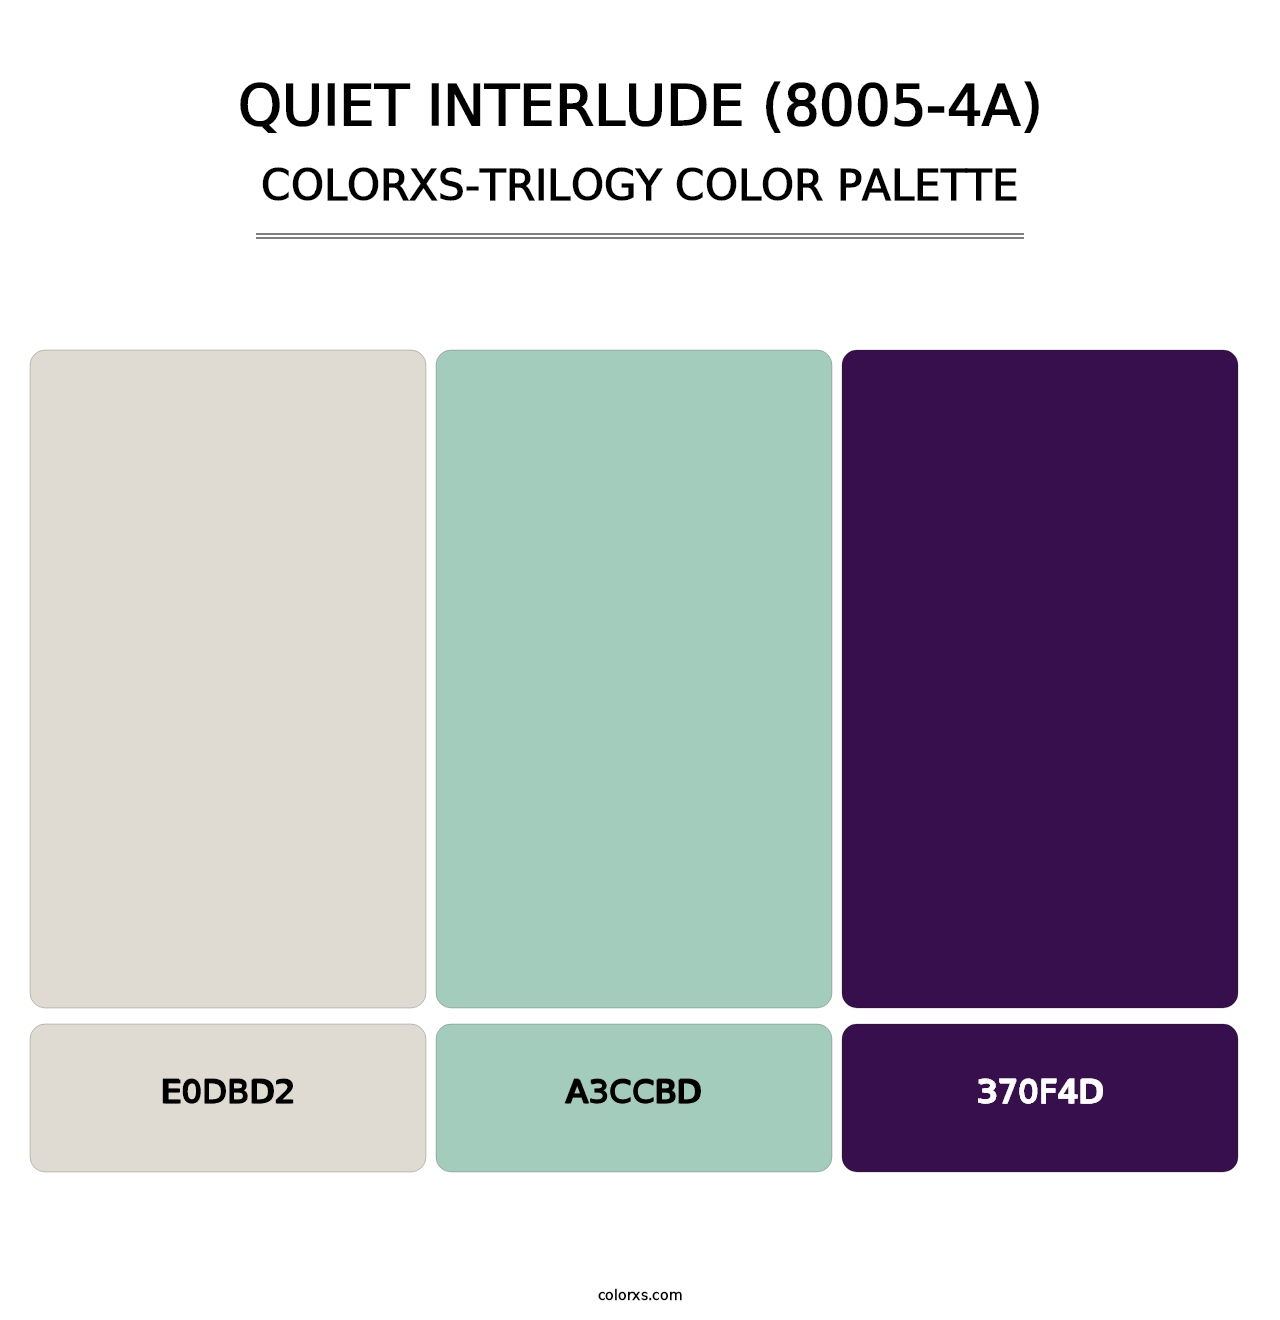 Quiet Interlude (8005-4A) - Colorxs Trilogy Palette